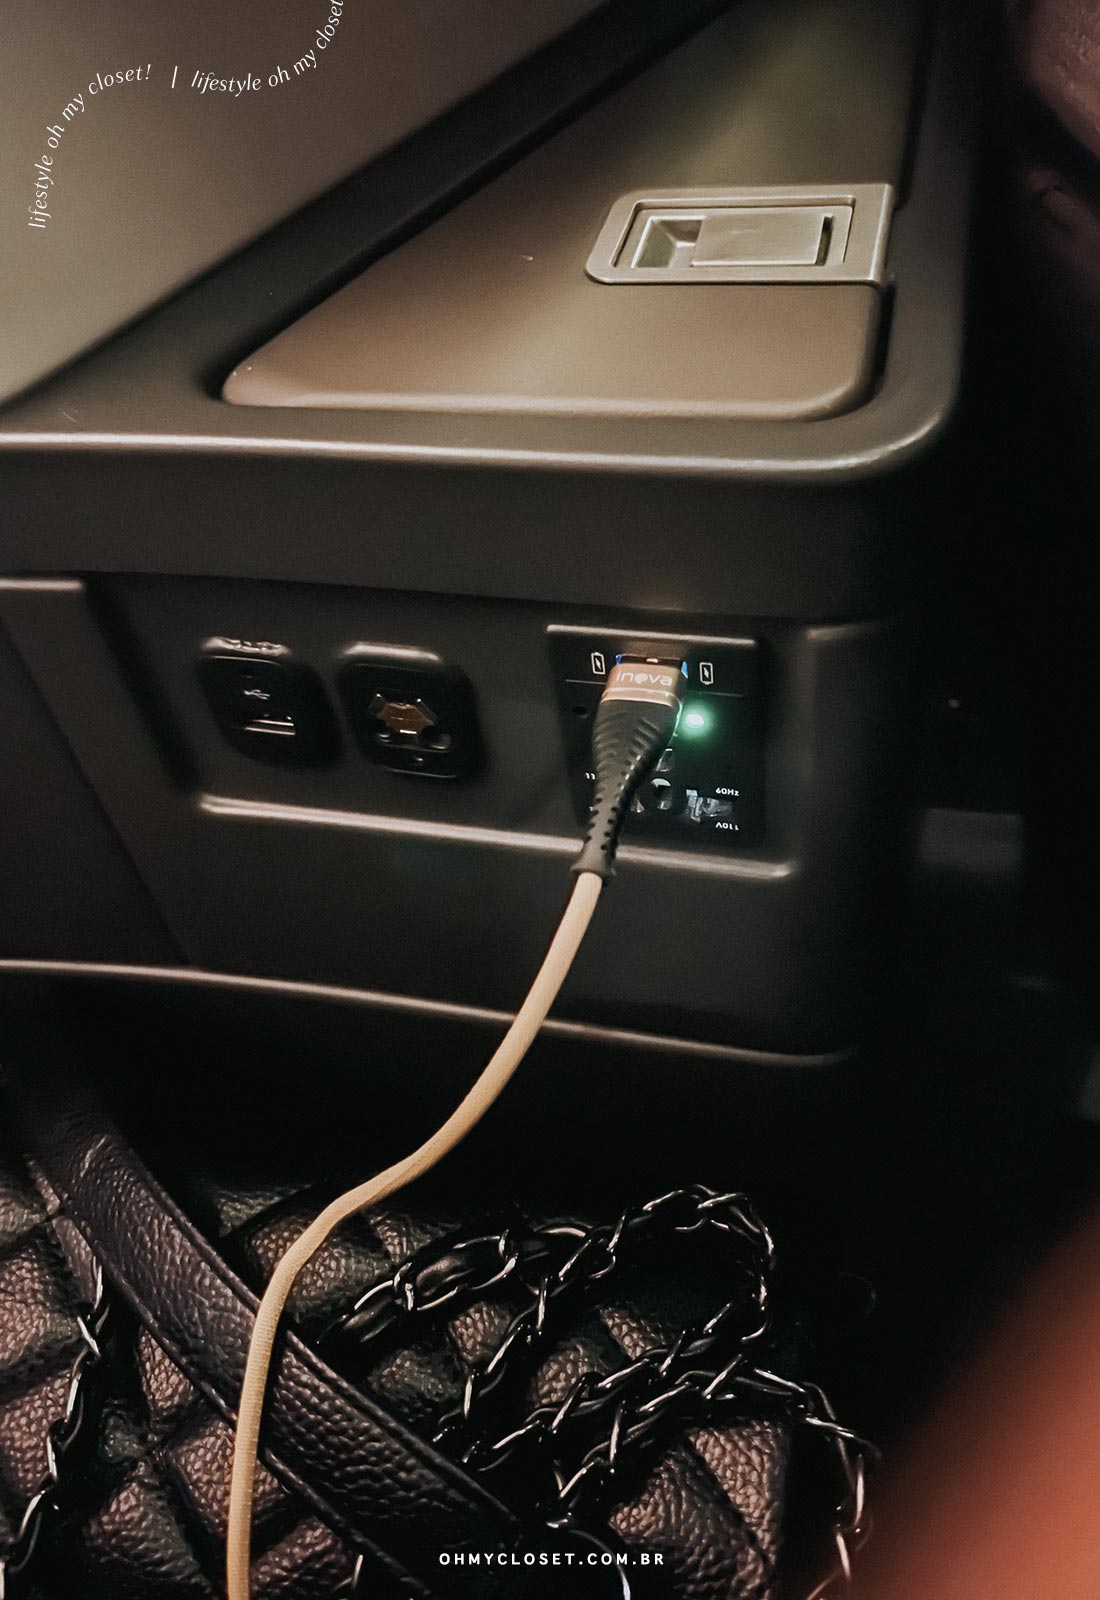 Tomadas e conectores disponíveis no assento da classe executiva da TAP no A330-NEO